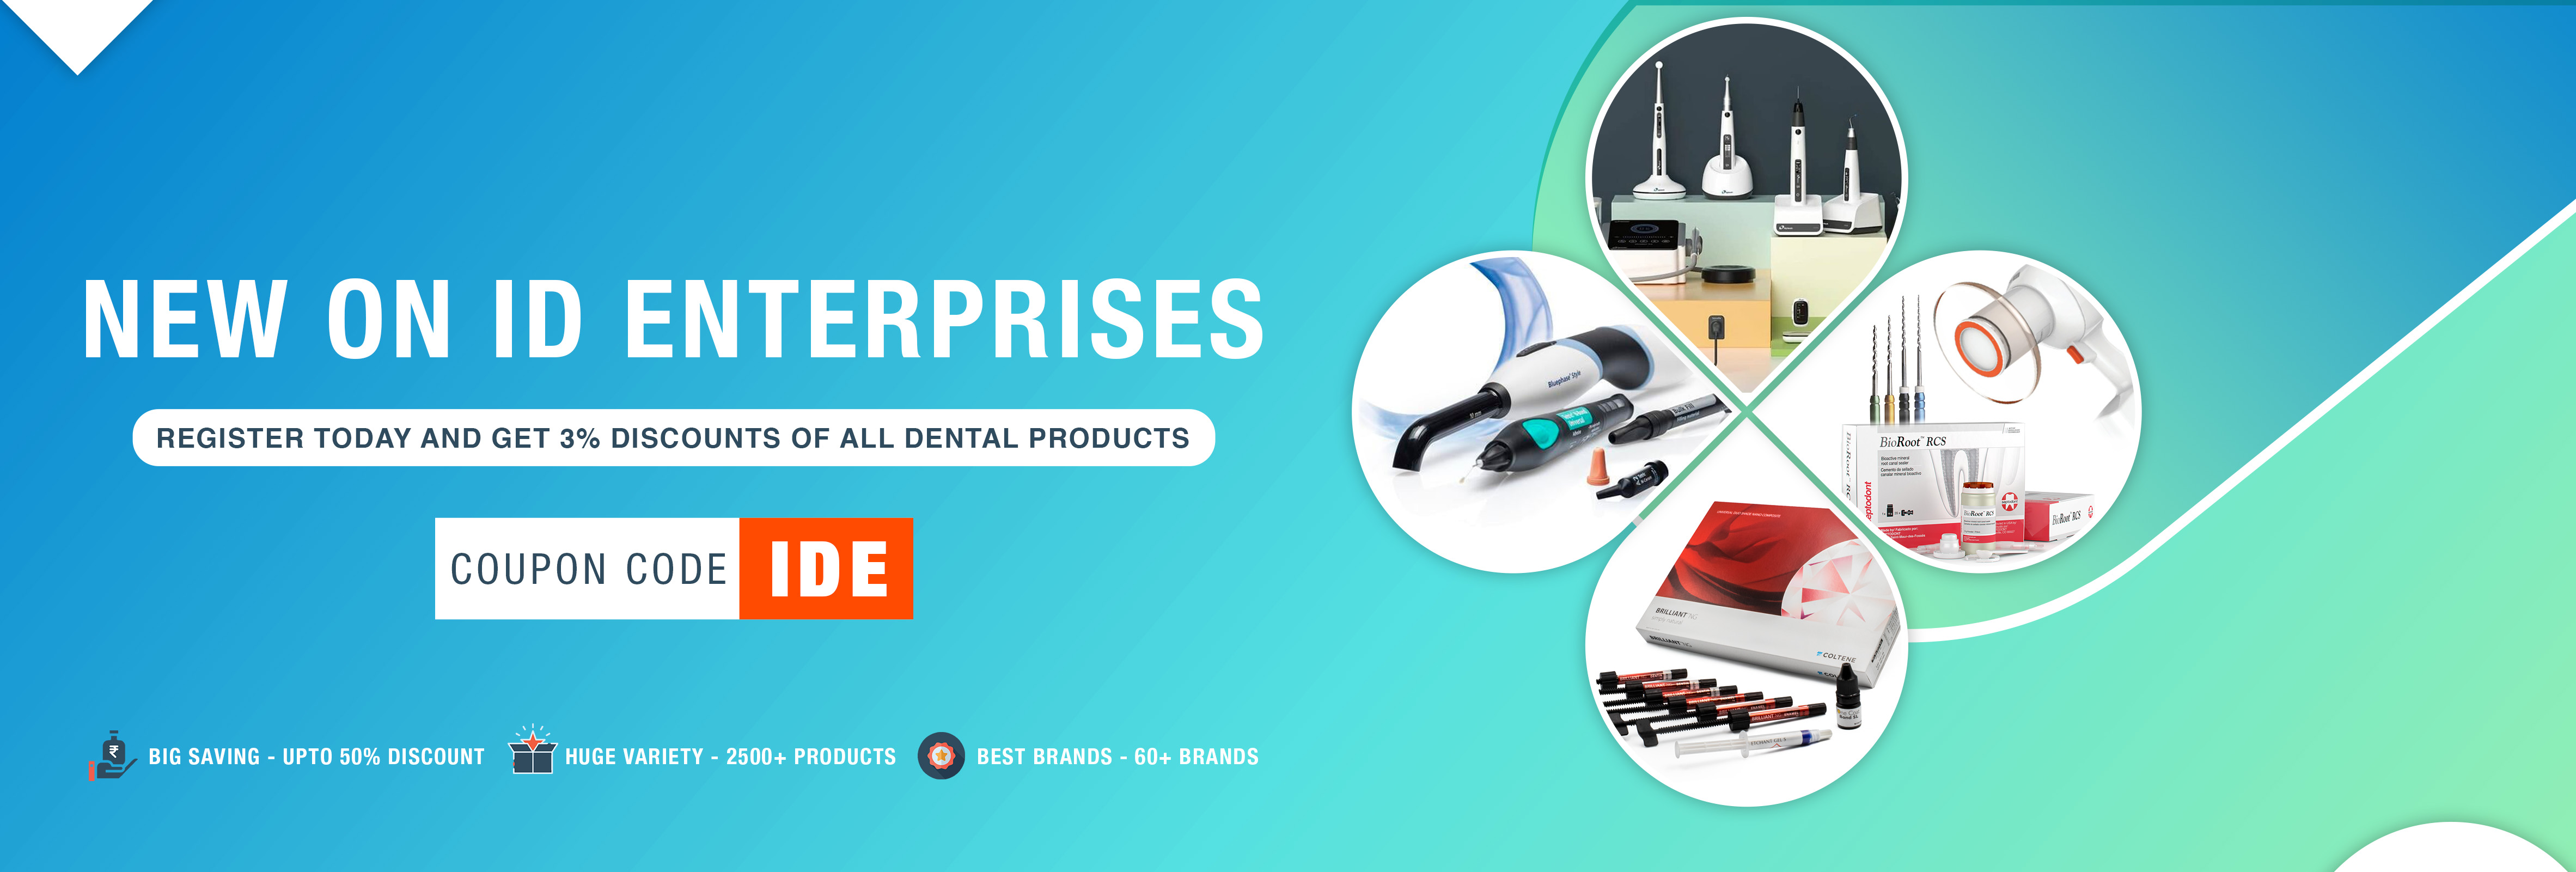 Dental Equipment Dealer Banner